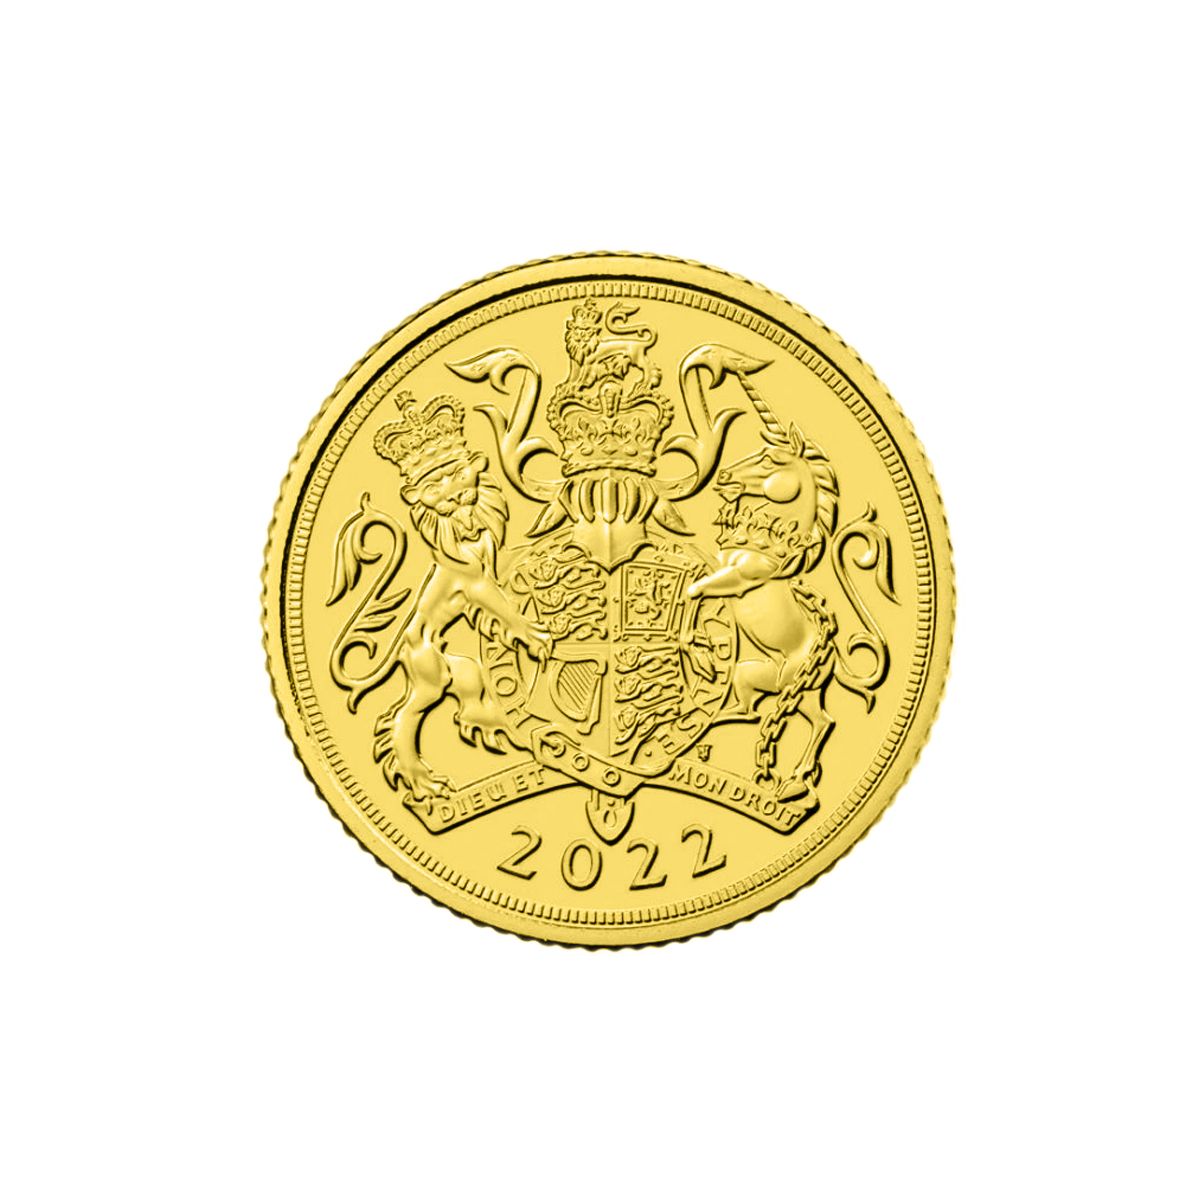 מטבע זהב סוברין - אליזבת השנייה